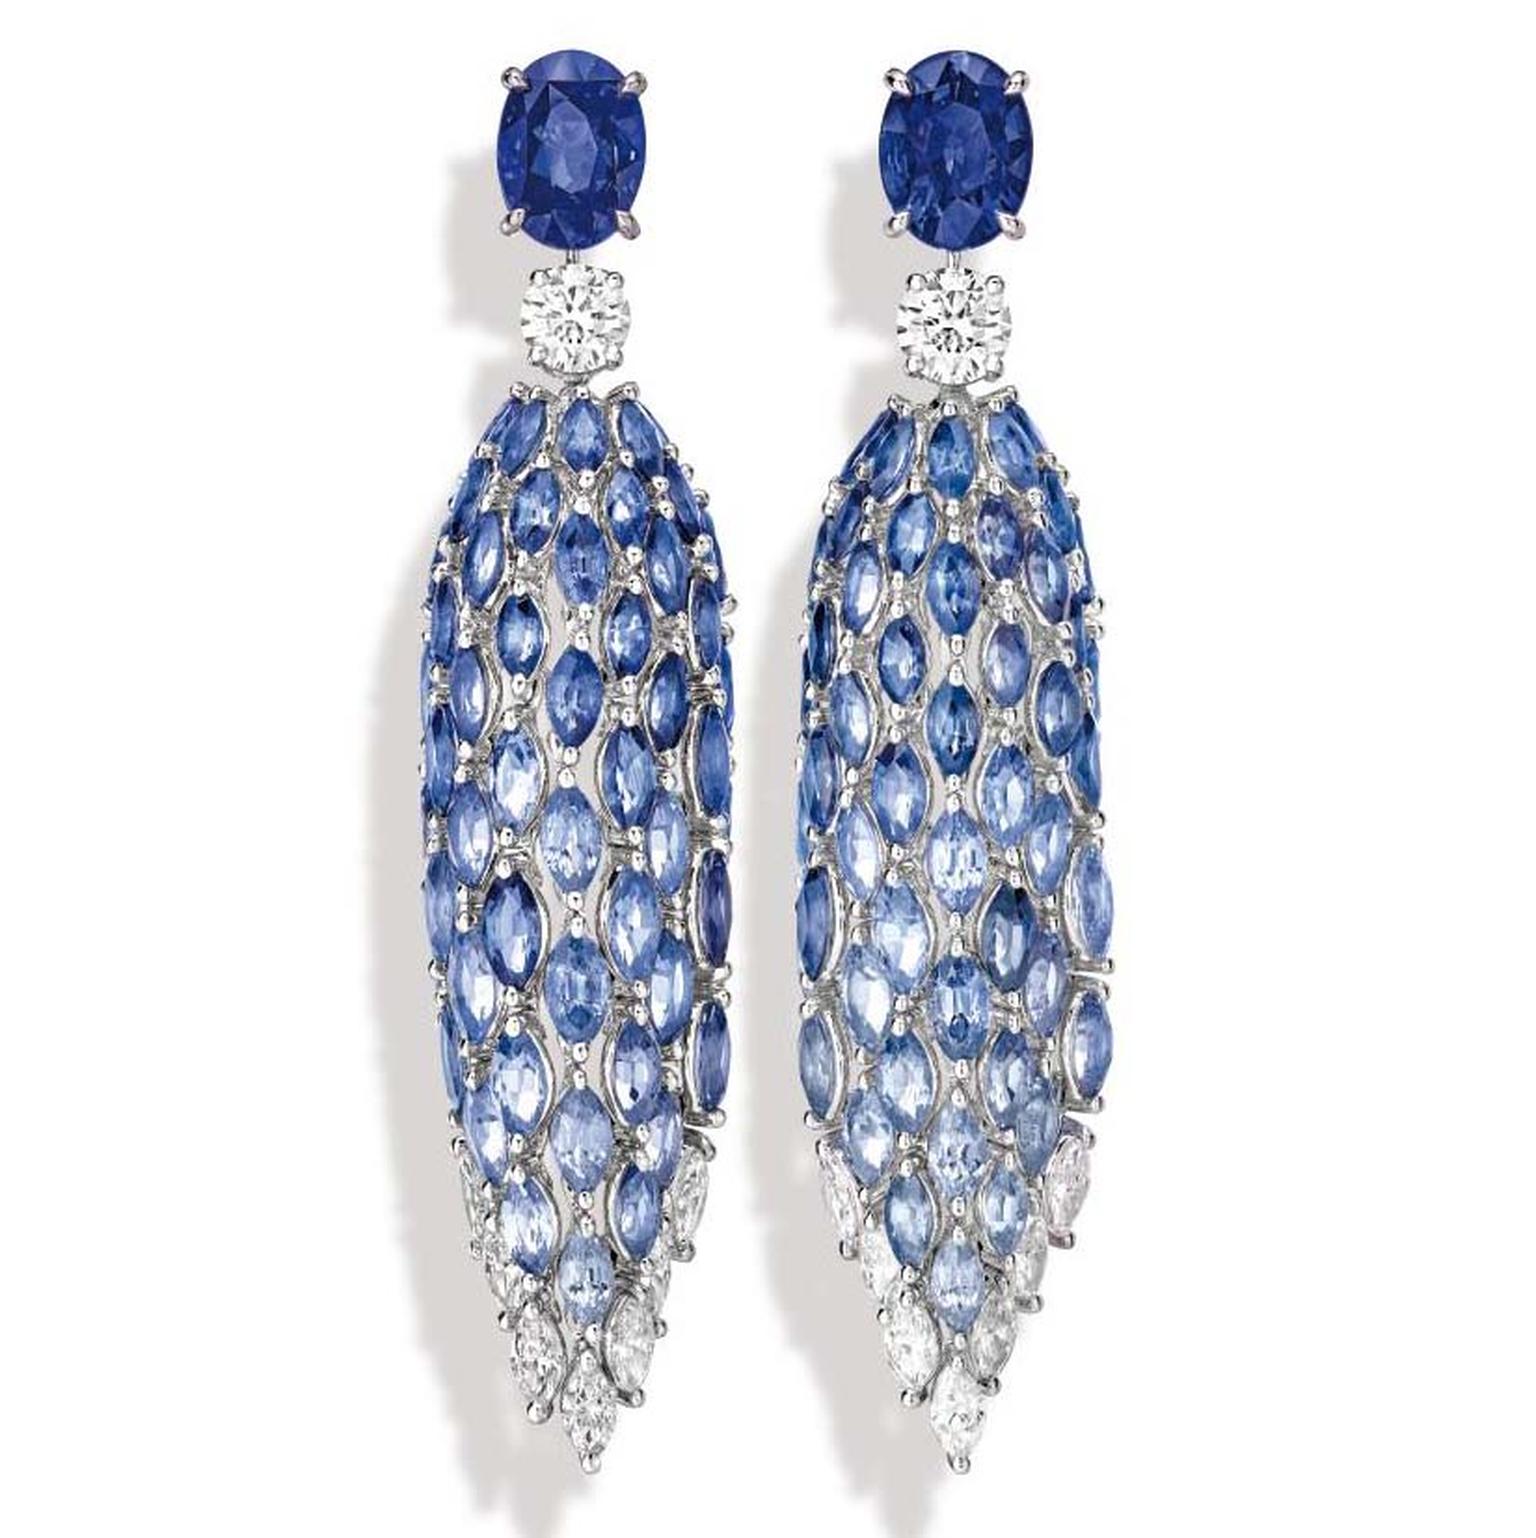 Piaget Golden Oasis Blue Waterfall earrings